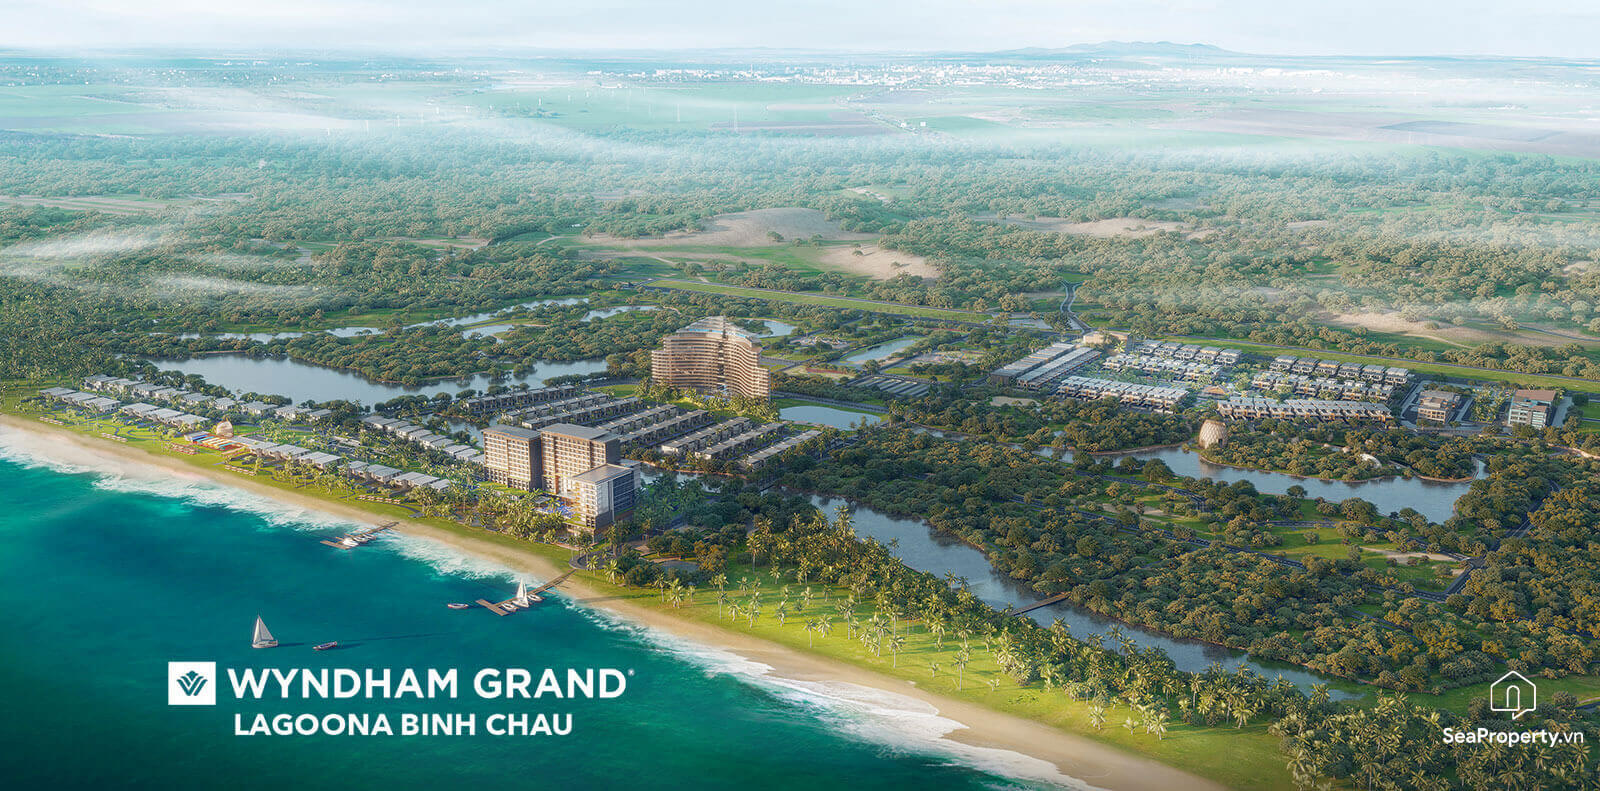 Wyndham Grand Lagoona Binh Chau